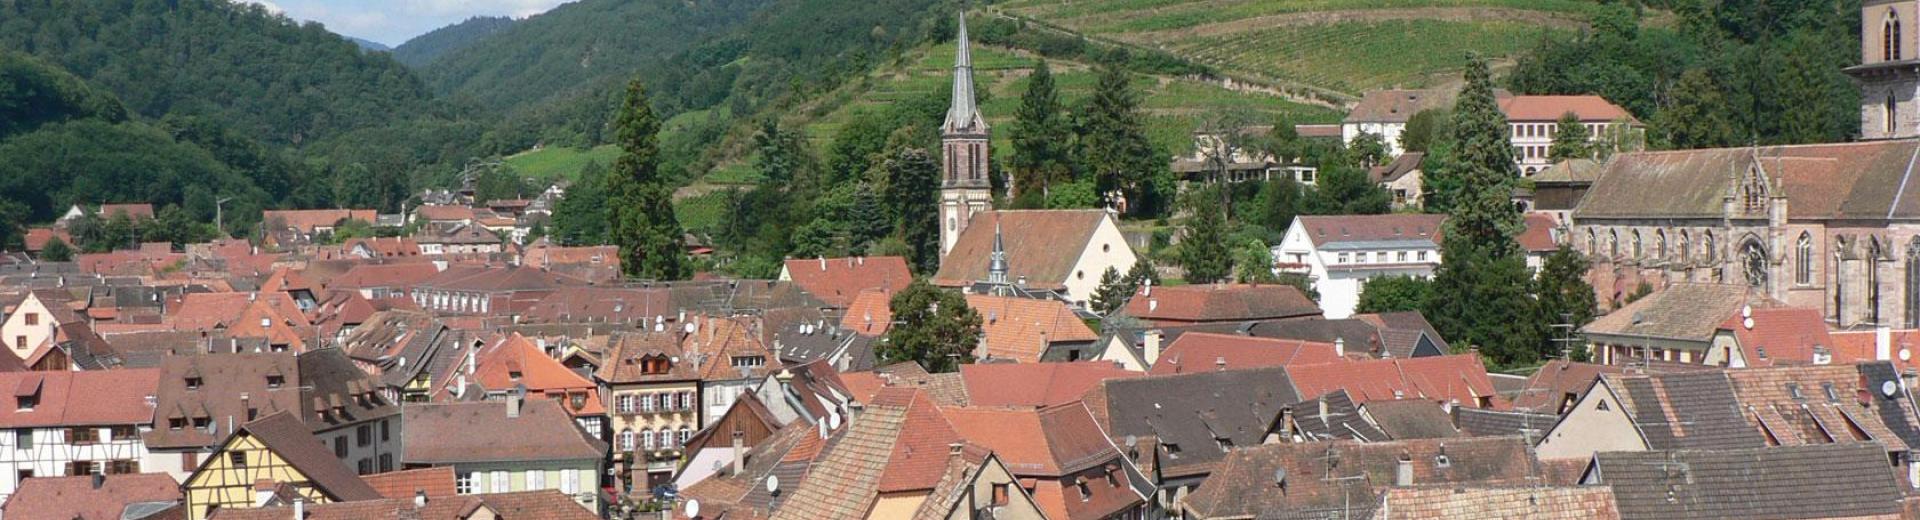 Panorama de Ribeauvillé en Alsace, au pied du massif des Vosges